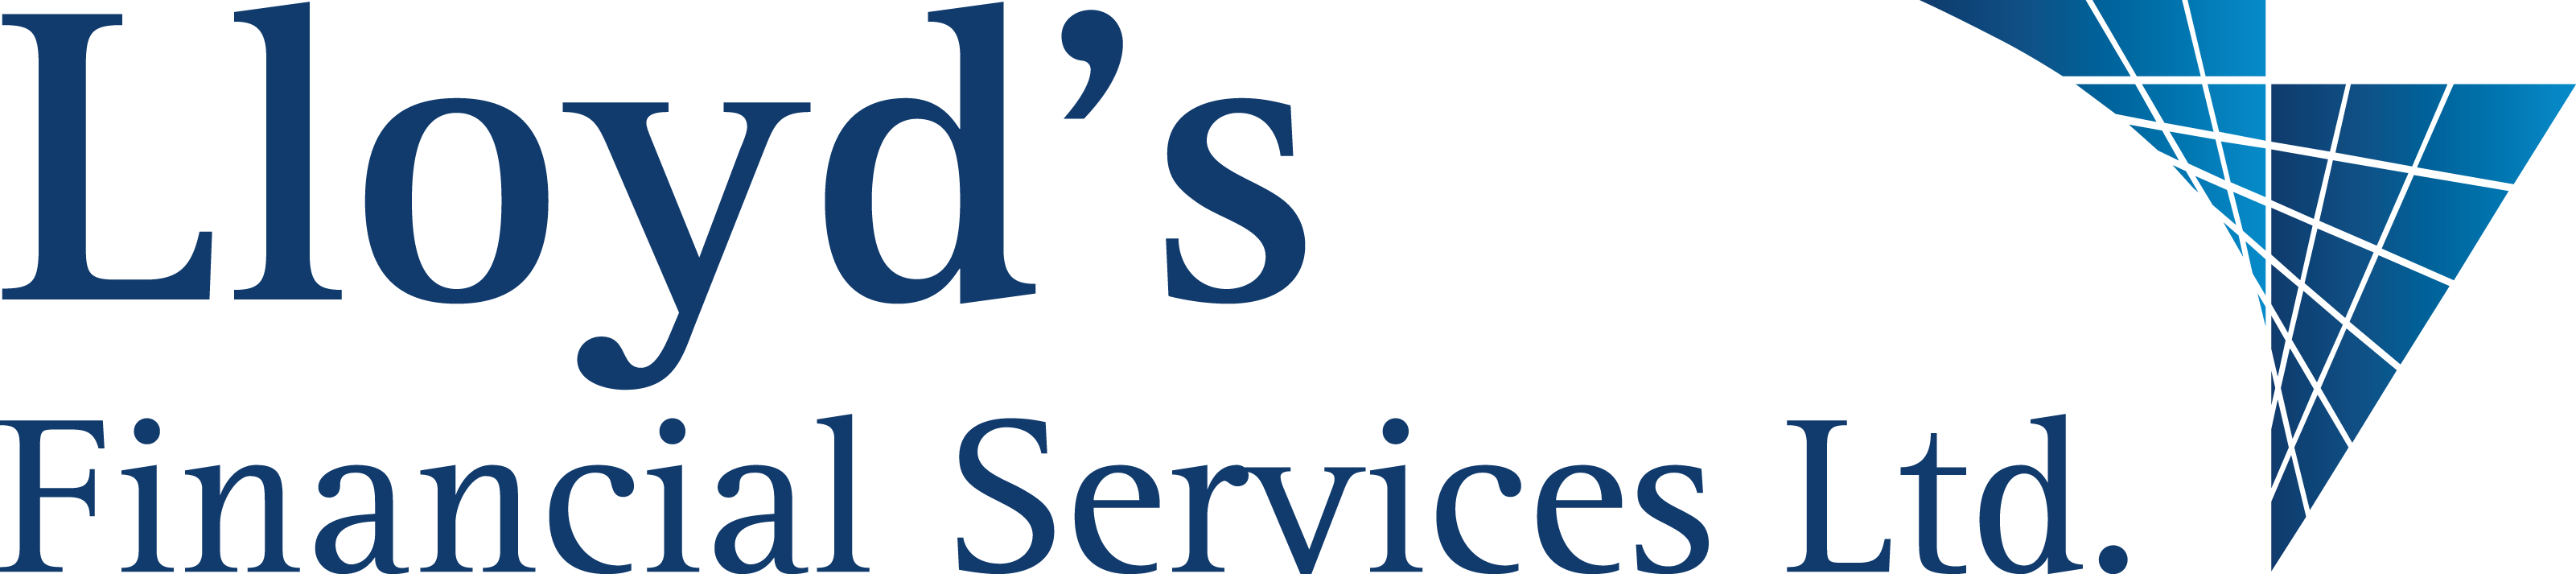 Lloyd's Financial Services Logo